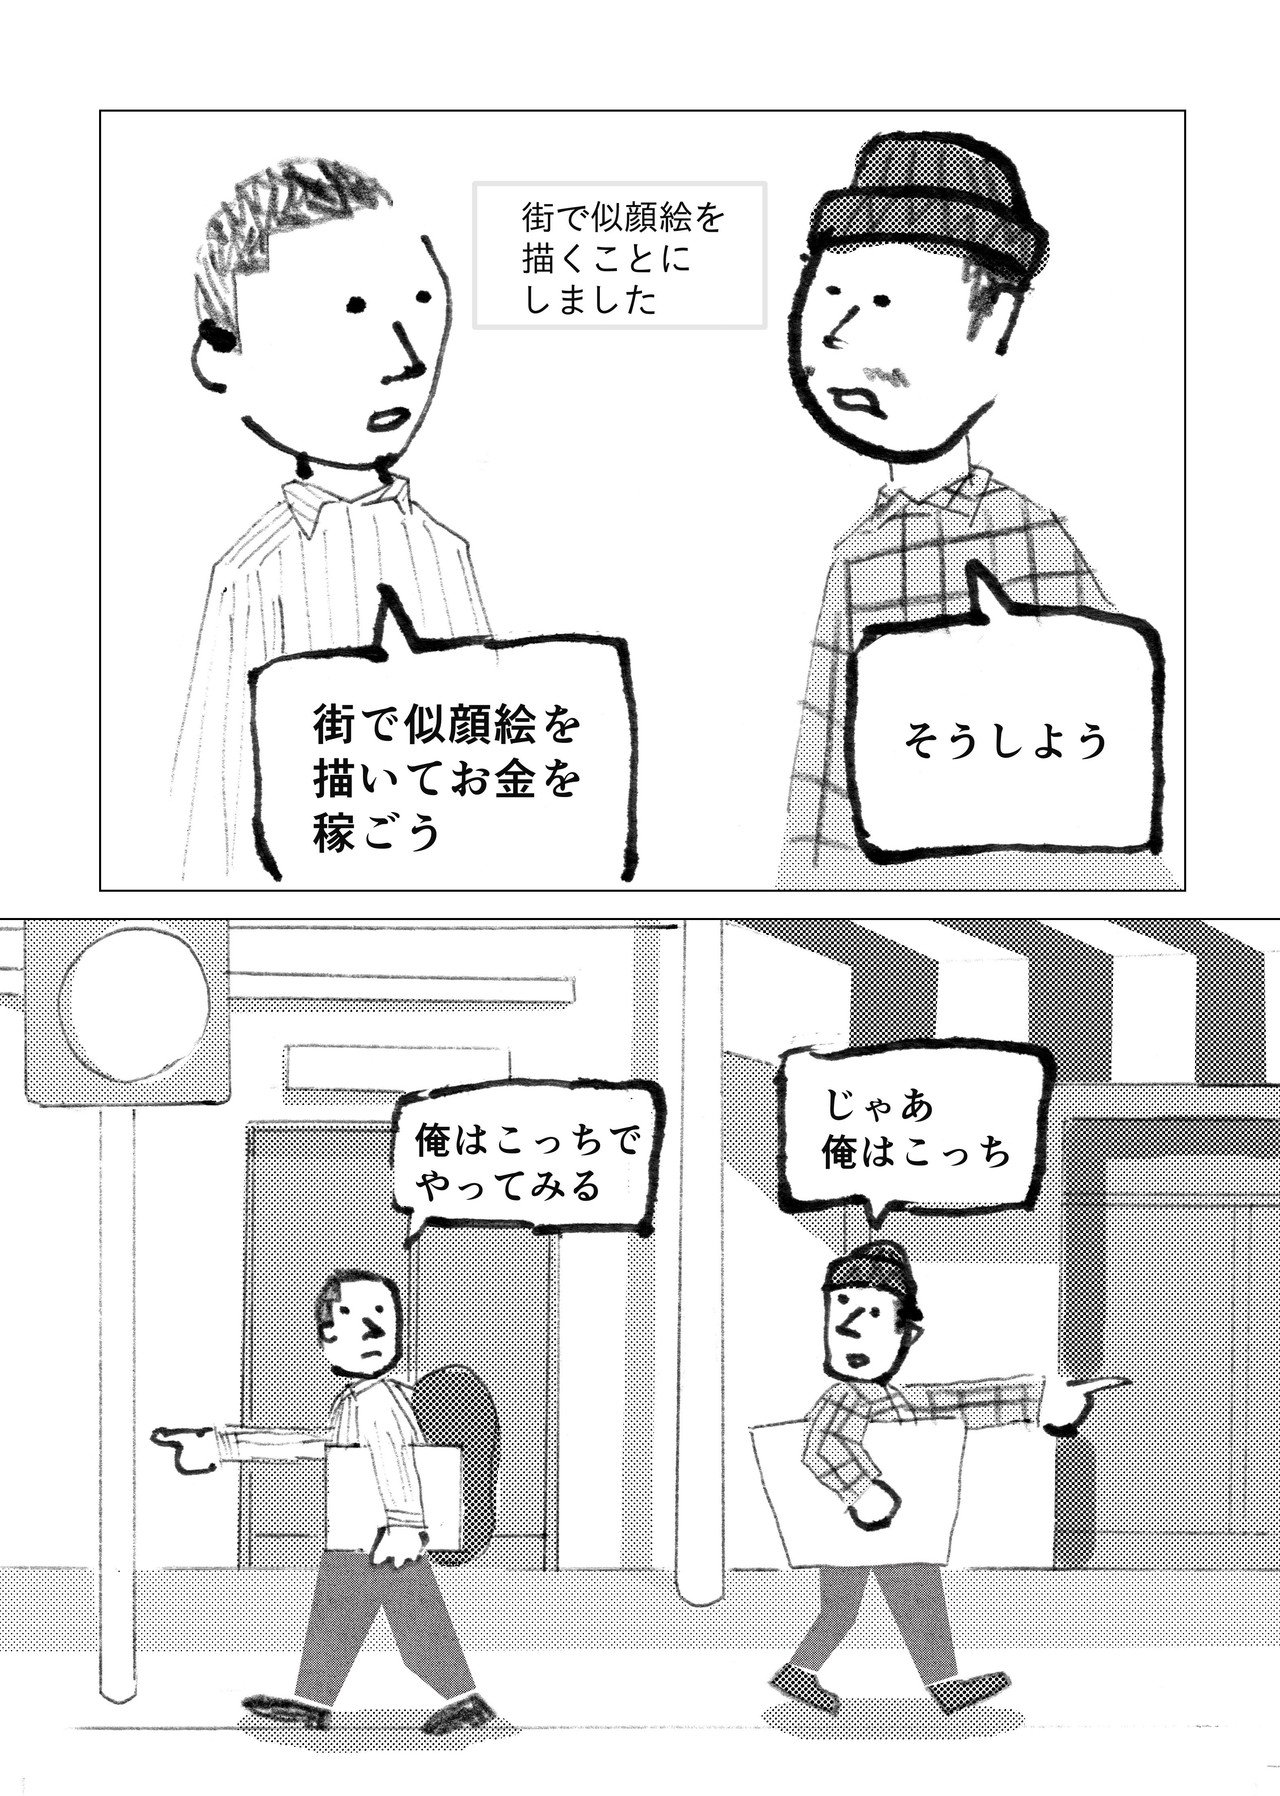 漫画_似顔絵_1